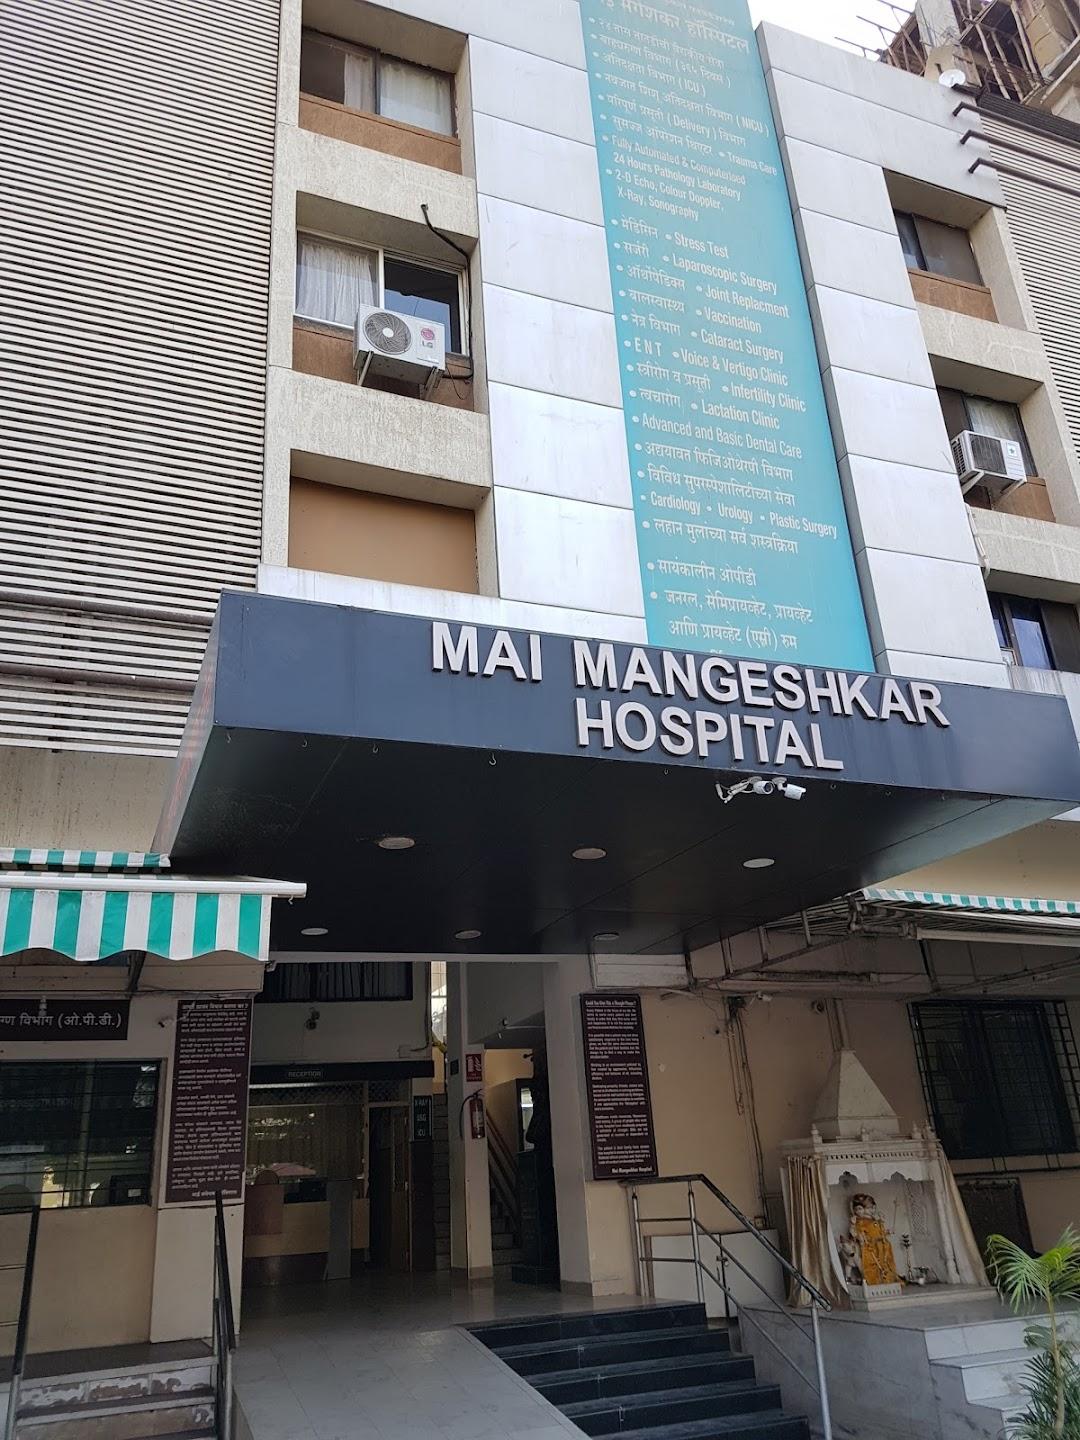 LMMF's Mai Mangeshkar Hospital